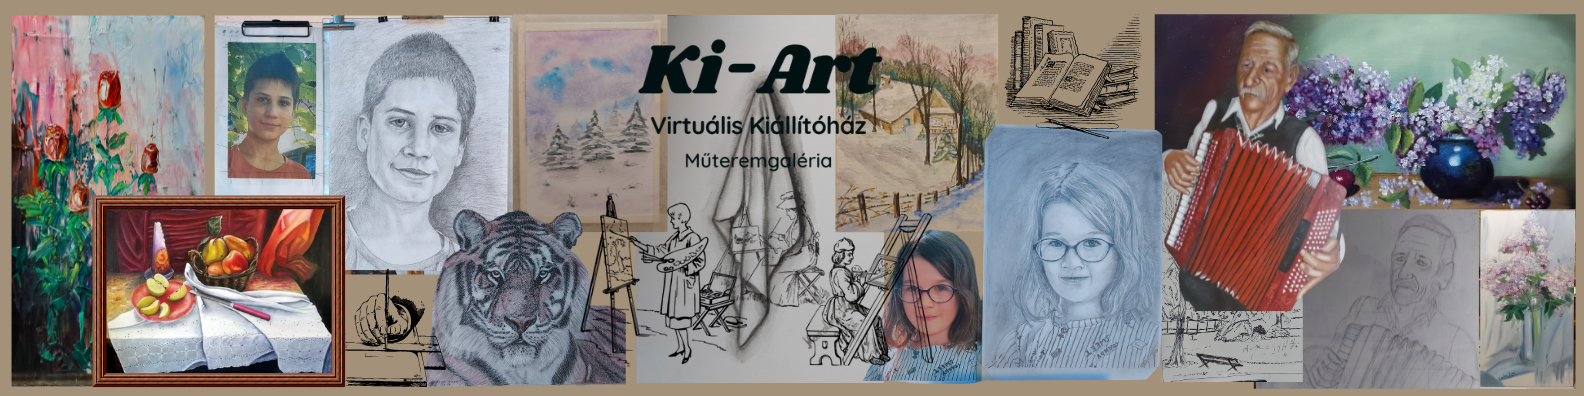 Ki-art virtualiskiallitohaz es muteremgaleria home